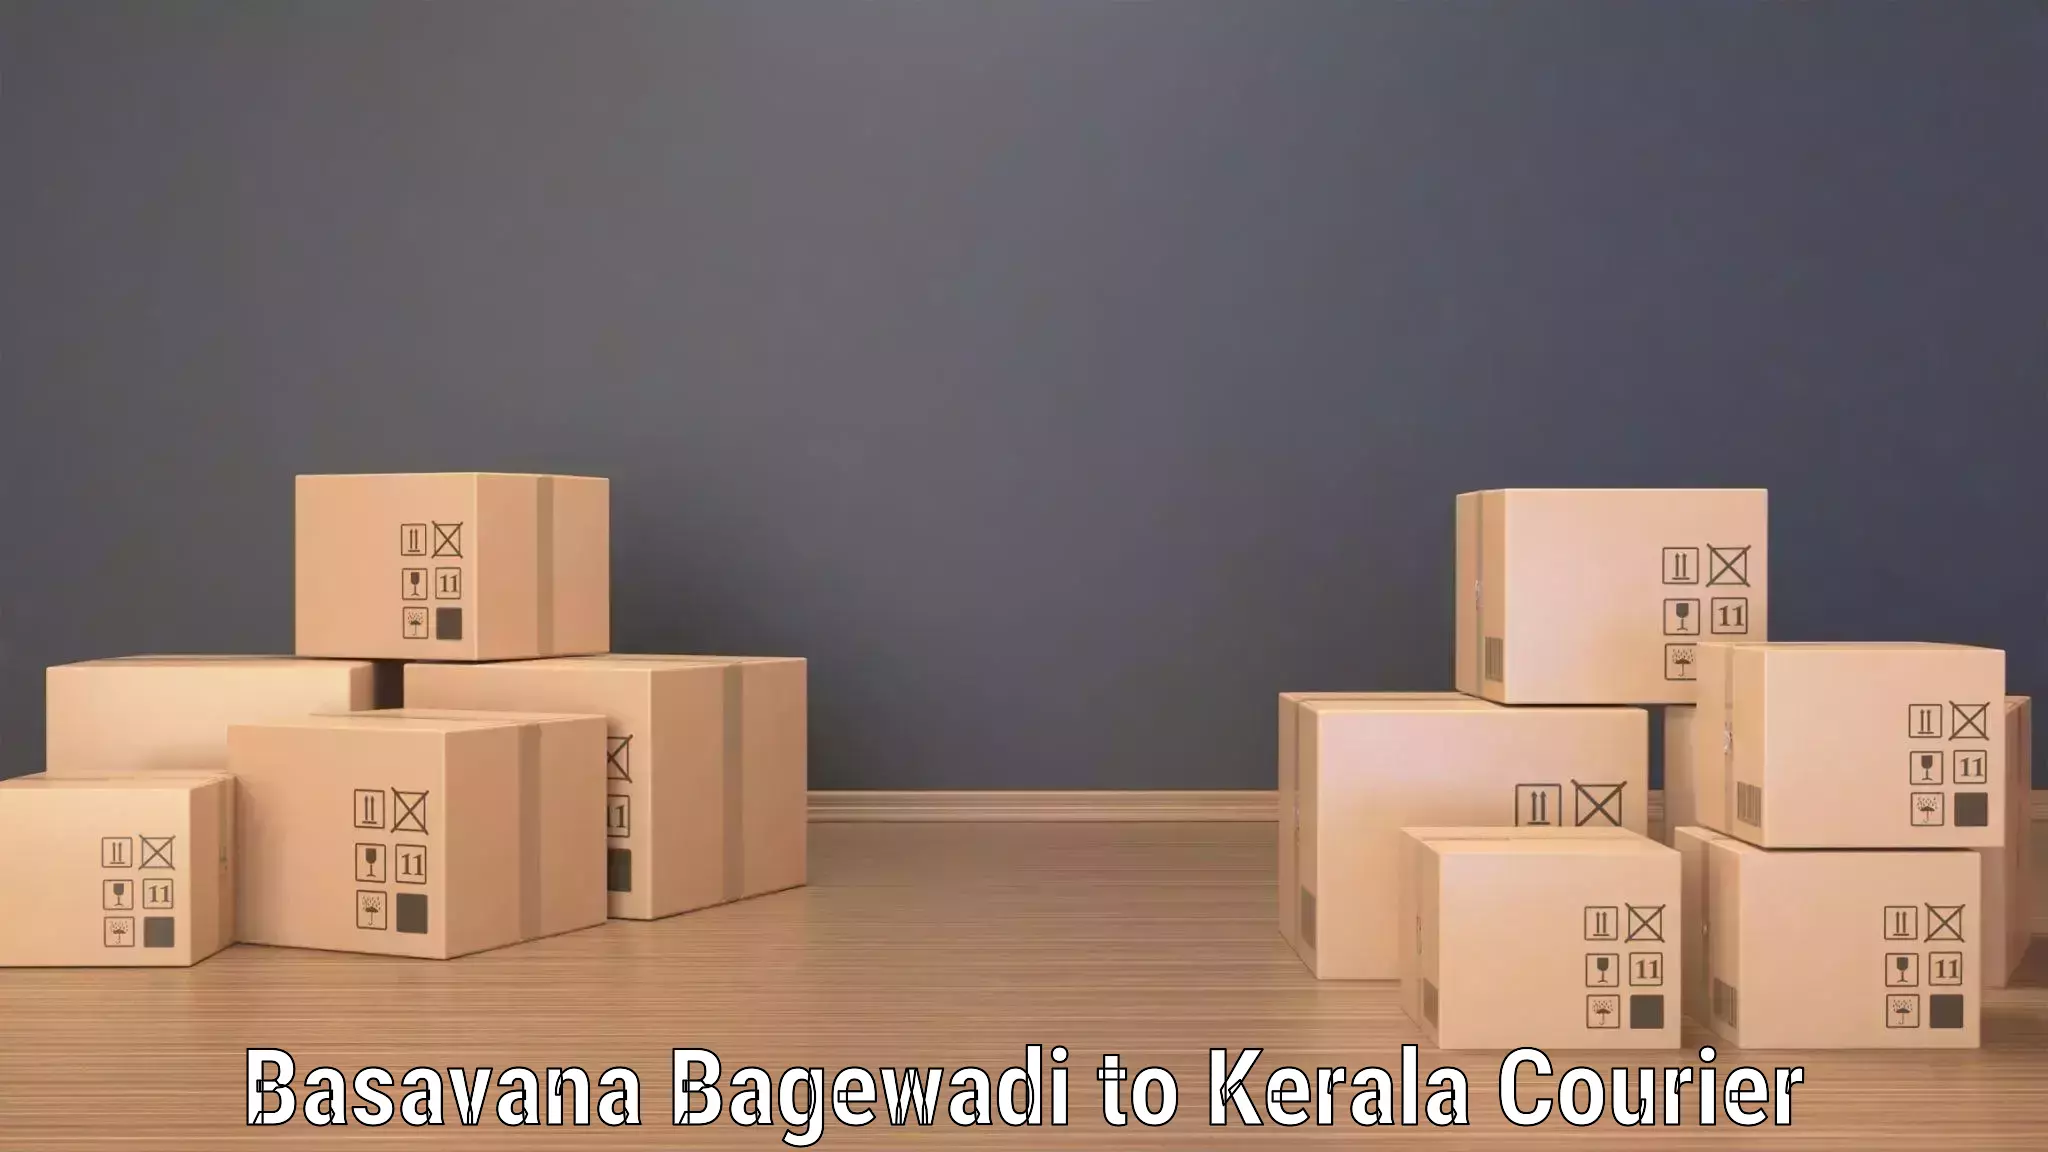 Express delivery network Basavana Bagewadi to Alakode